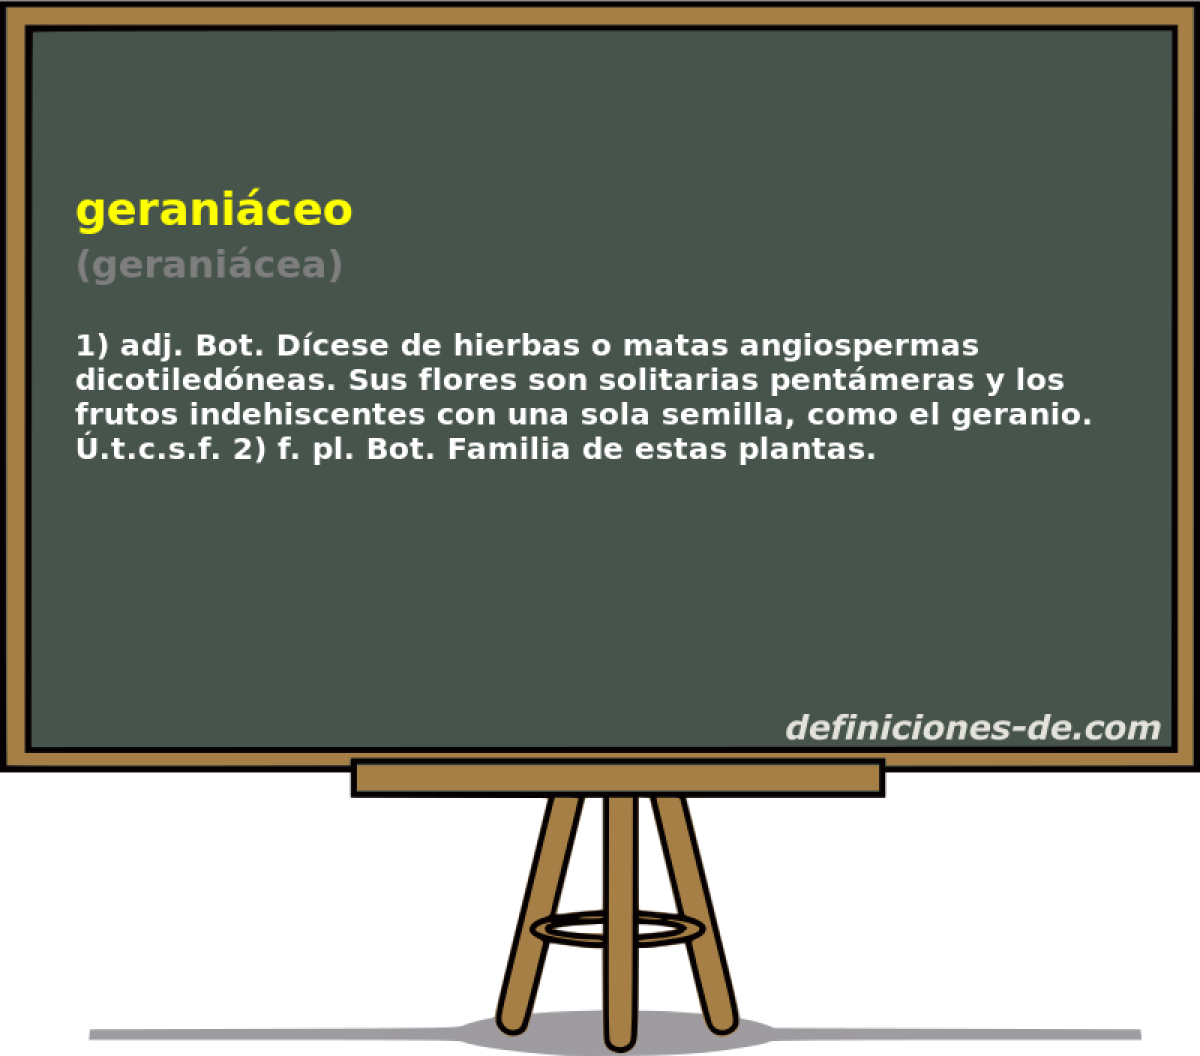 geraniceo (geranicea)